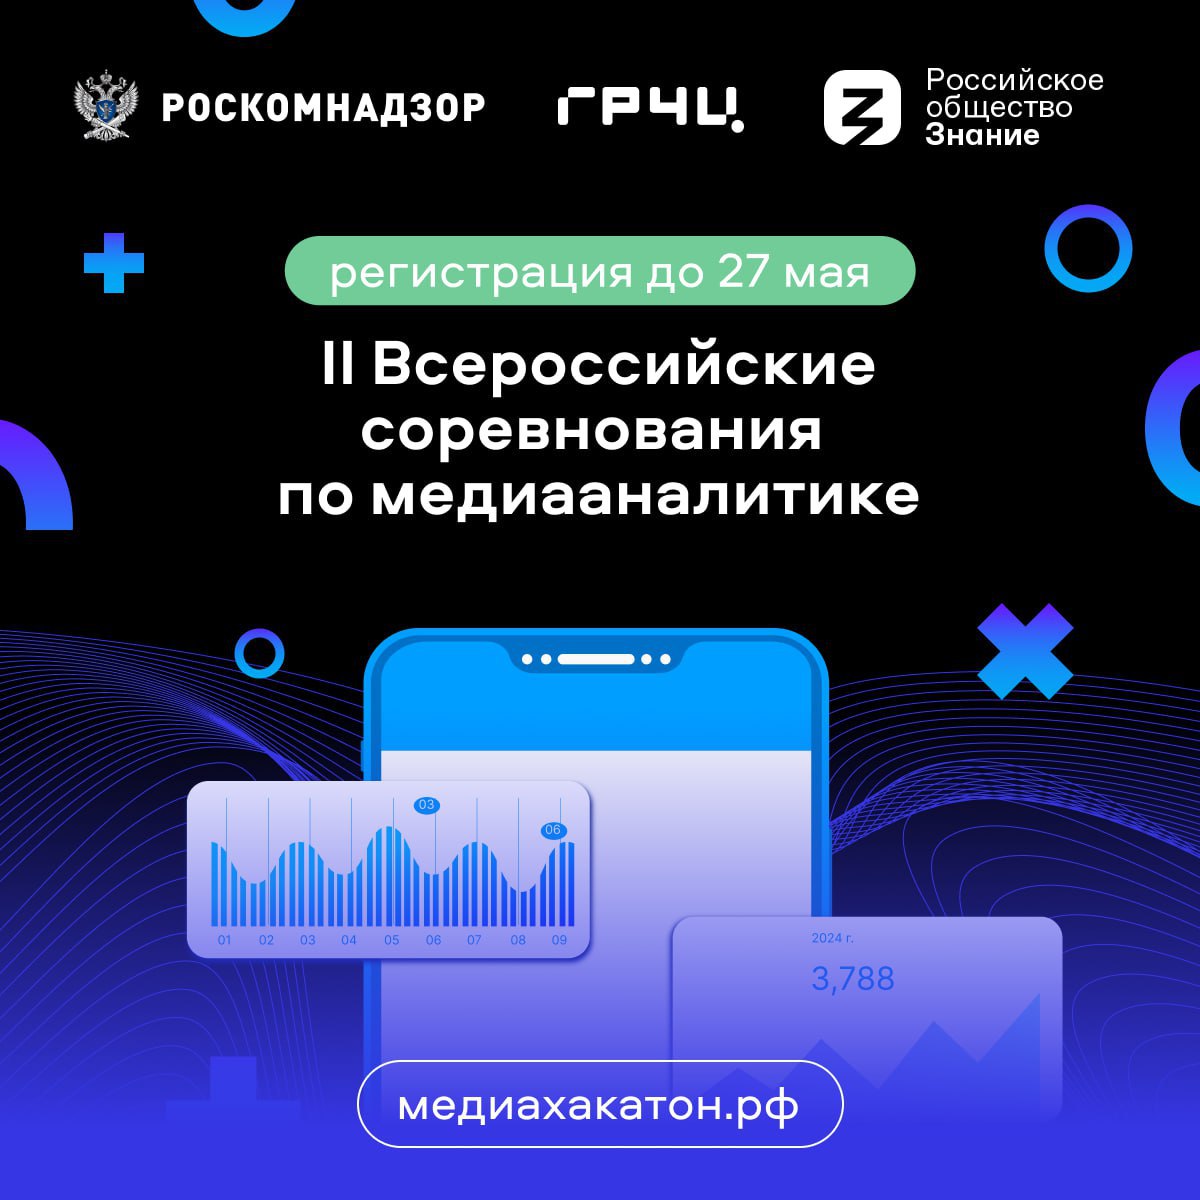 Стартовала регистрация участников на II Всероссийские соревнования по медиааналитике